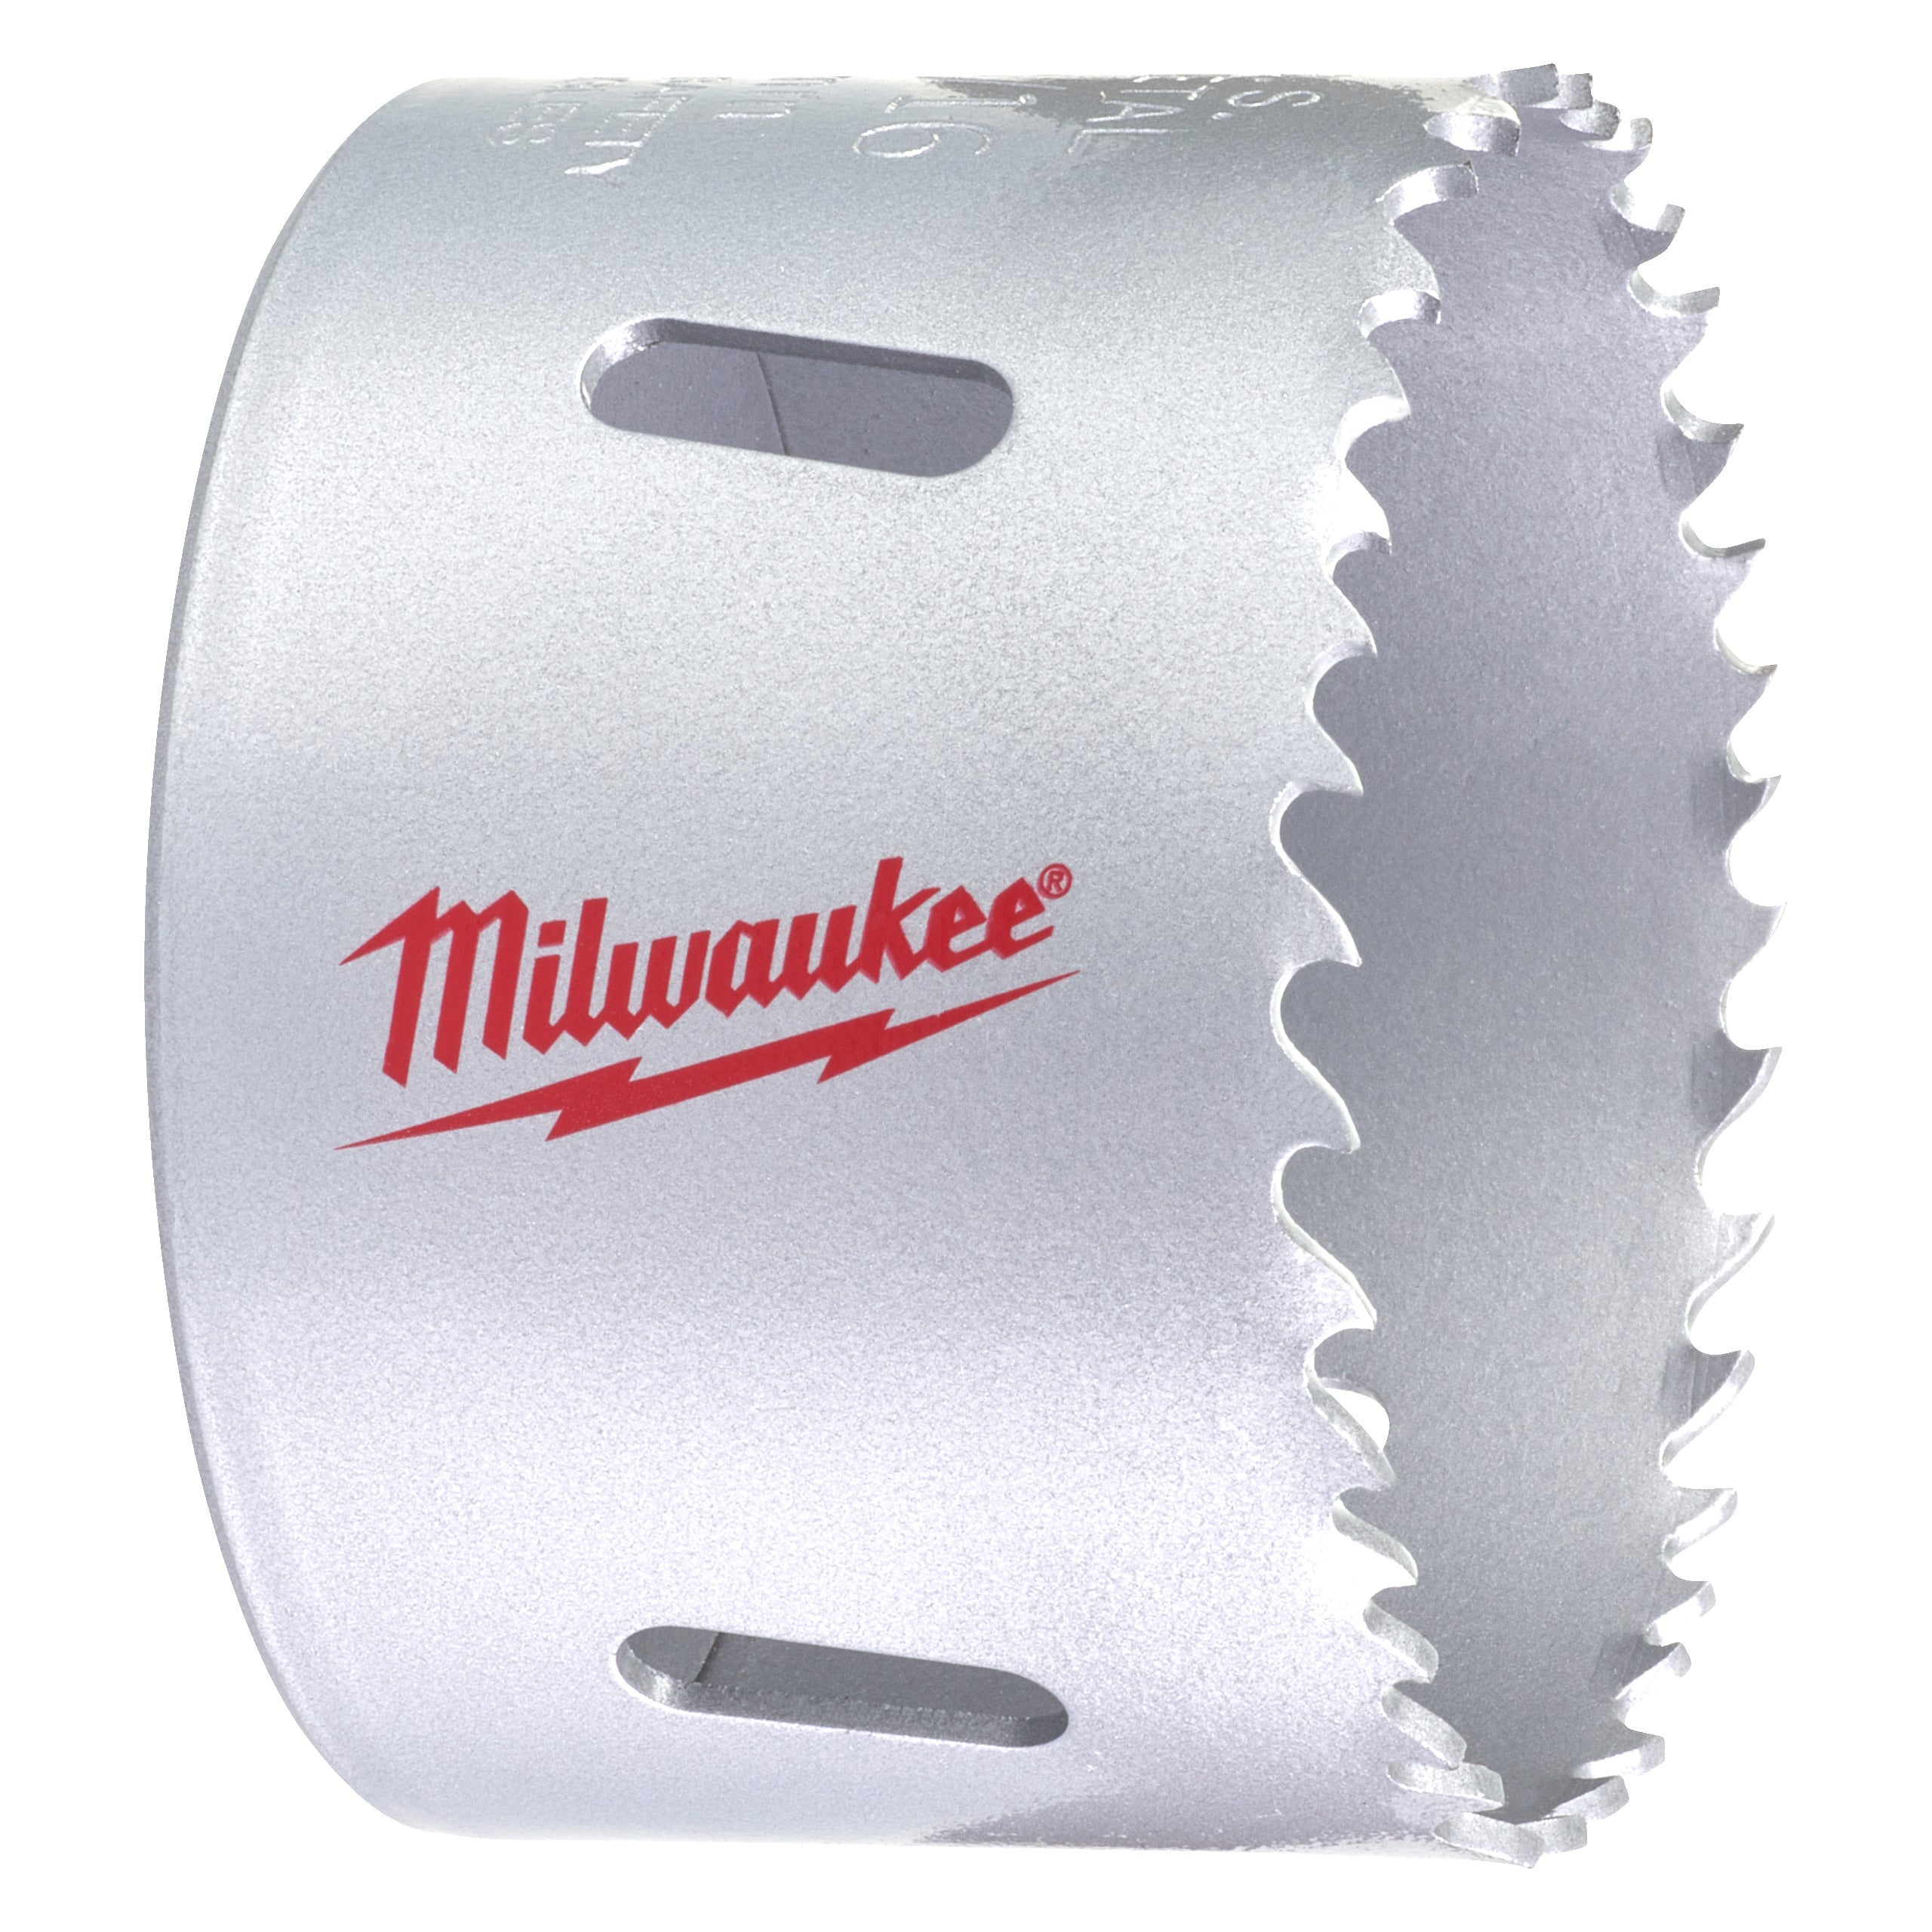 Carotă Milwaukee HOLE DOZER™ bi-metal pentru contractanți Ø65 mm 4932464695